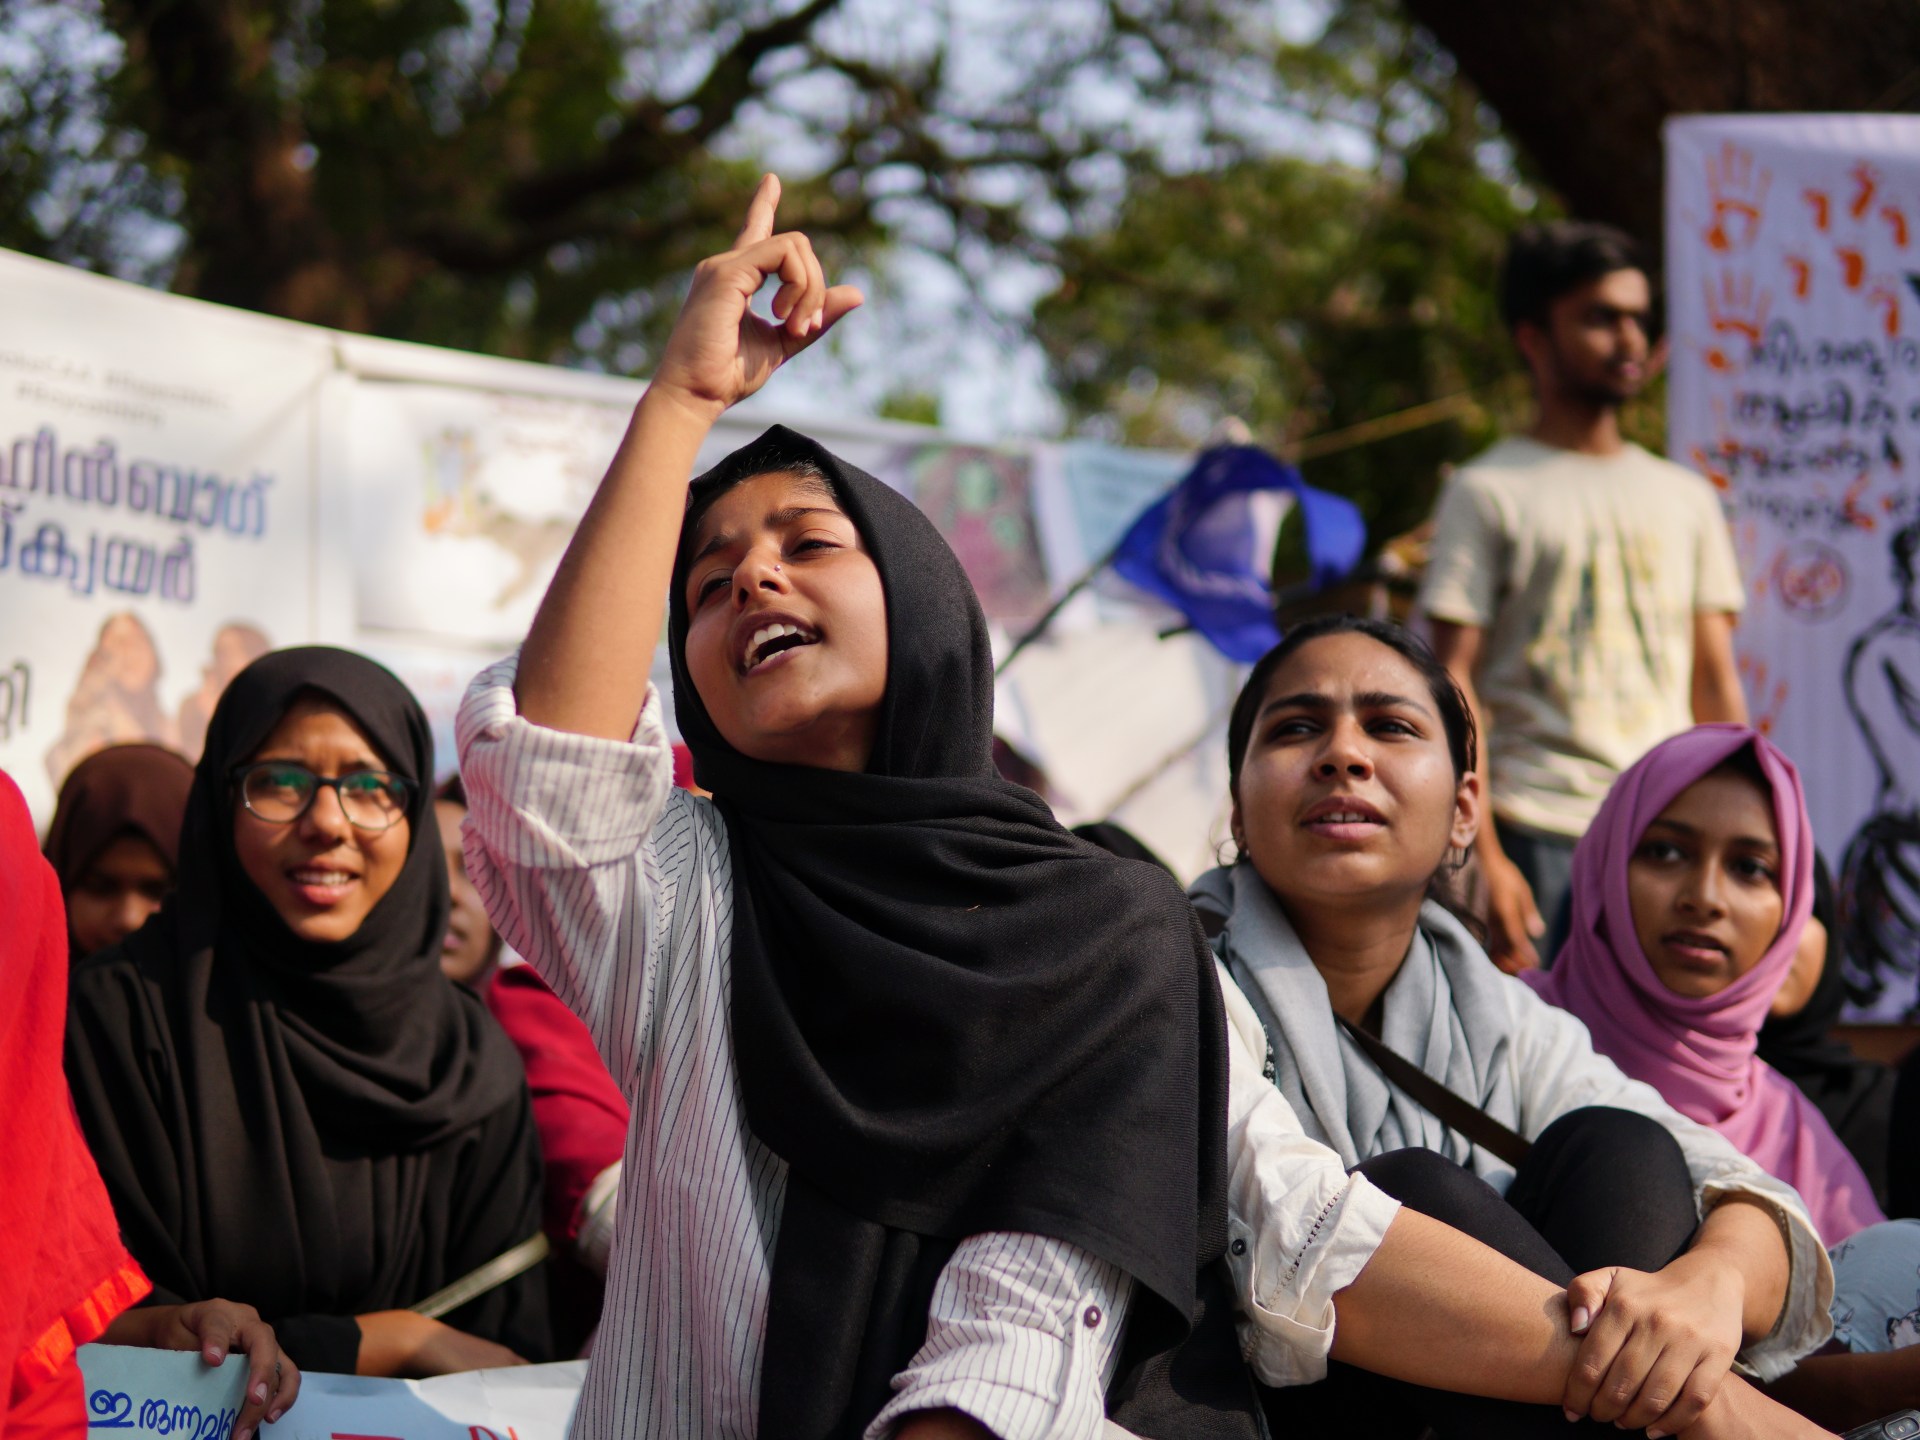 Wanita Muslim India Tidak Membutuhkan Pria ‘Penyelamat’ – Hindu atau Muslim |  Islamofobia